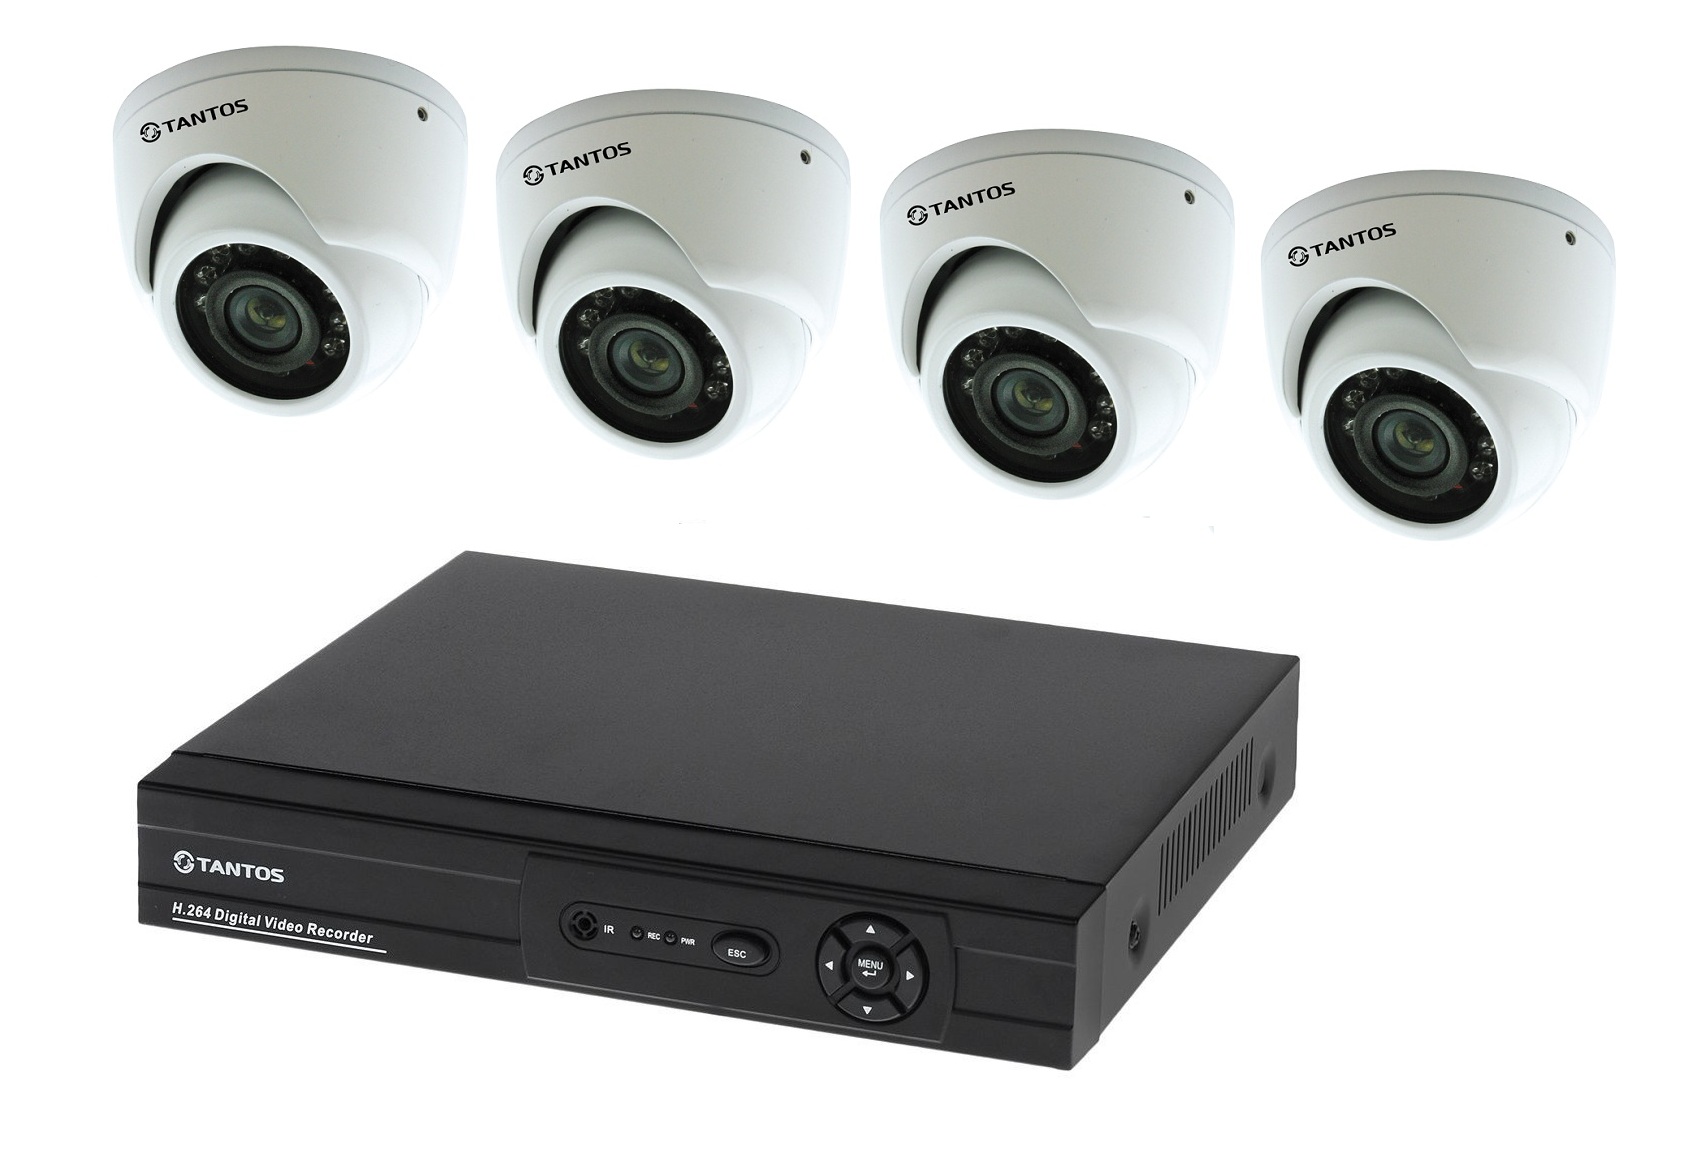 Регистратор уличный. Комплект видеонаблюдения "tantos Страж-4". Камера видеонаблюдения XPX комплект н.264. Комплект видеонаблюдения DVR 7204c1 с 4 видеокамерами. Комплект видеонаблюдения установи сам Sony 13кам.